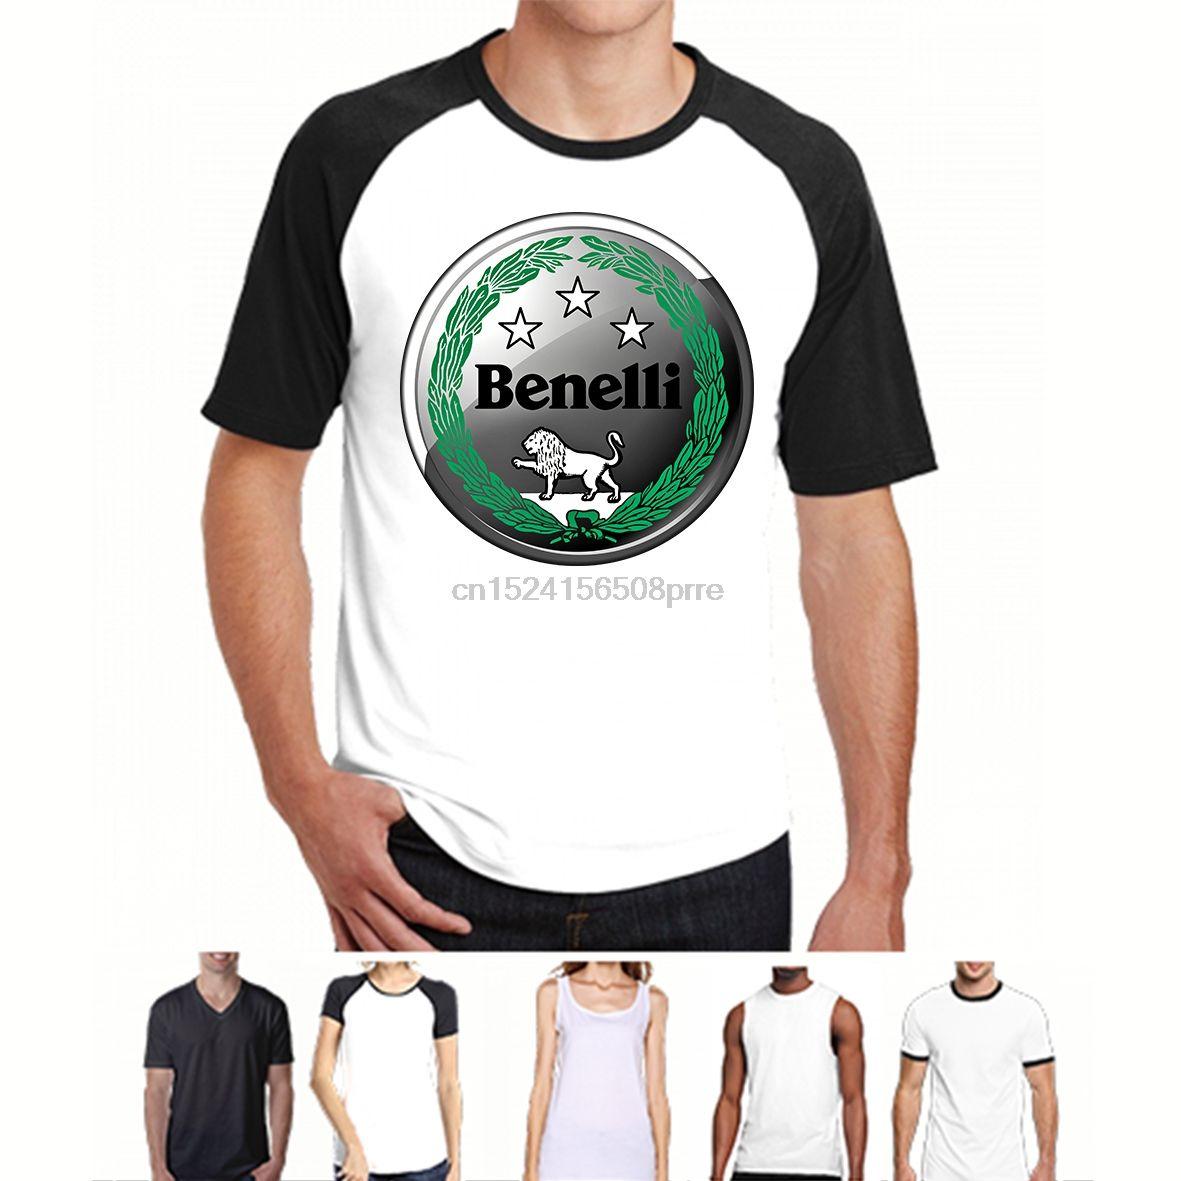 Benelli Firearms Logo - New Benelli Gun Firearms Logo Men/'s Black T-Shirt Size S to 3XL ...